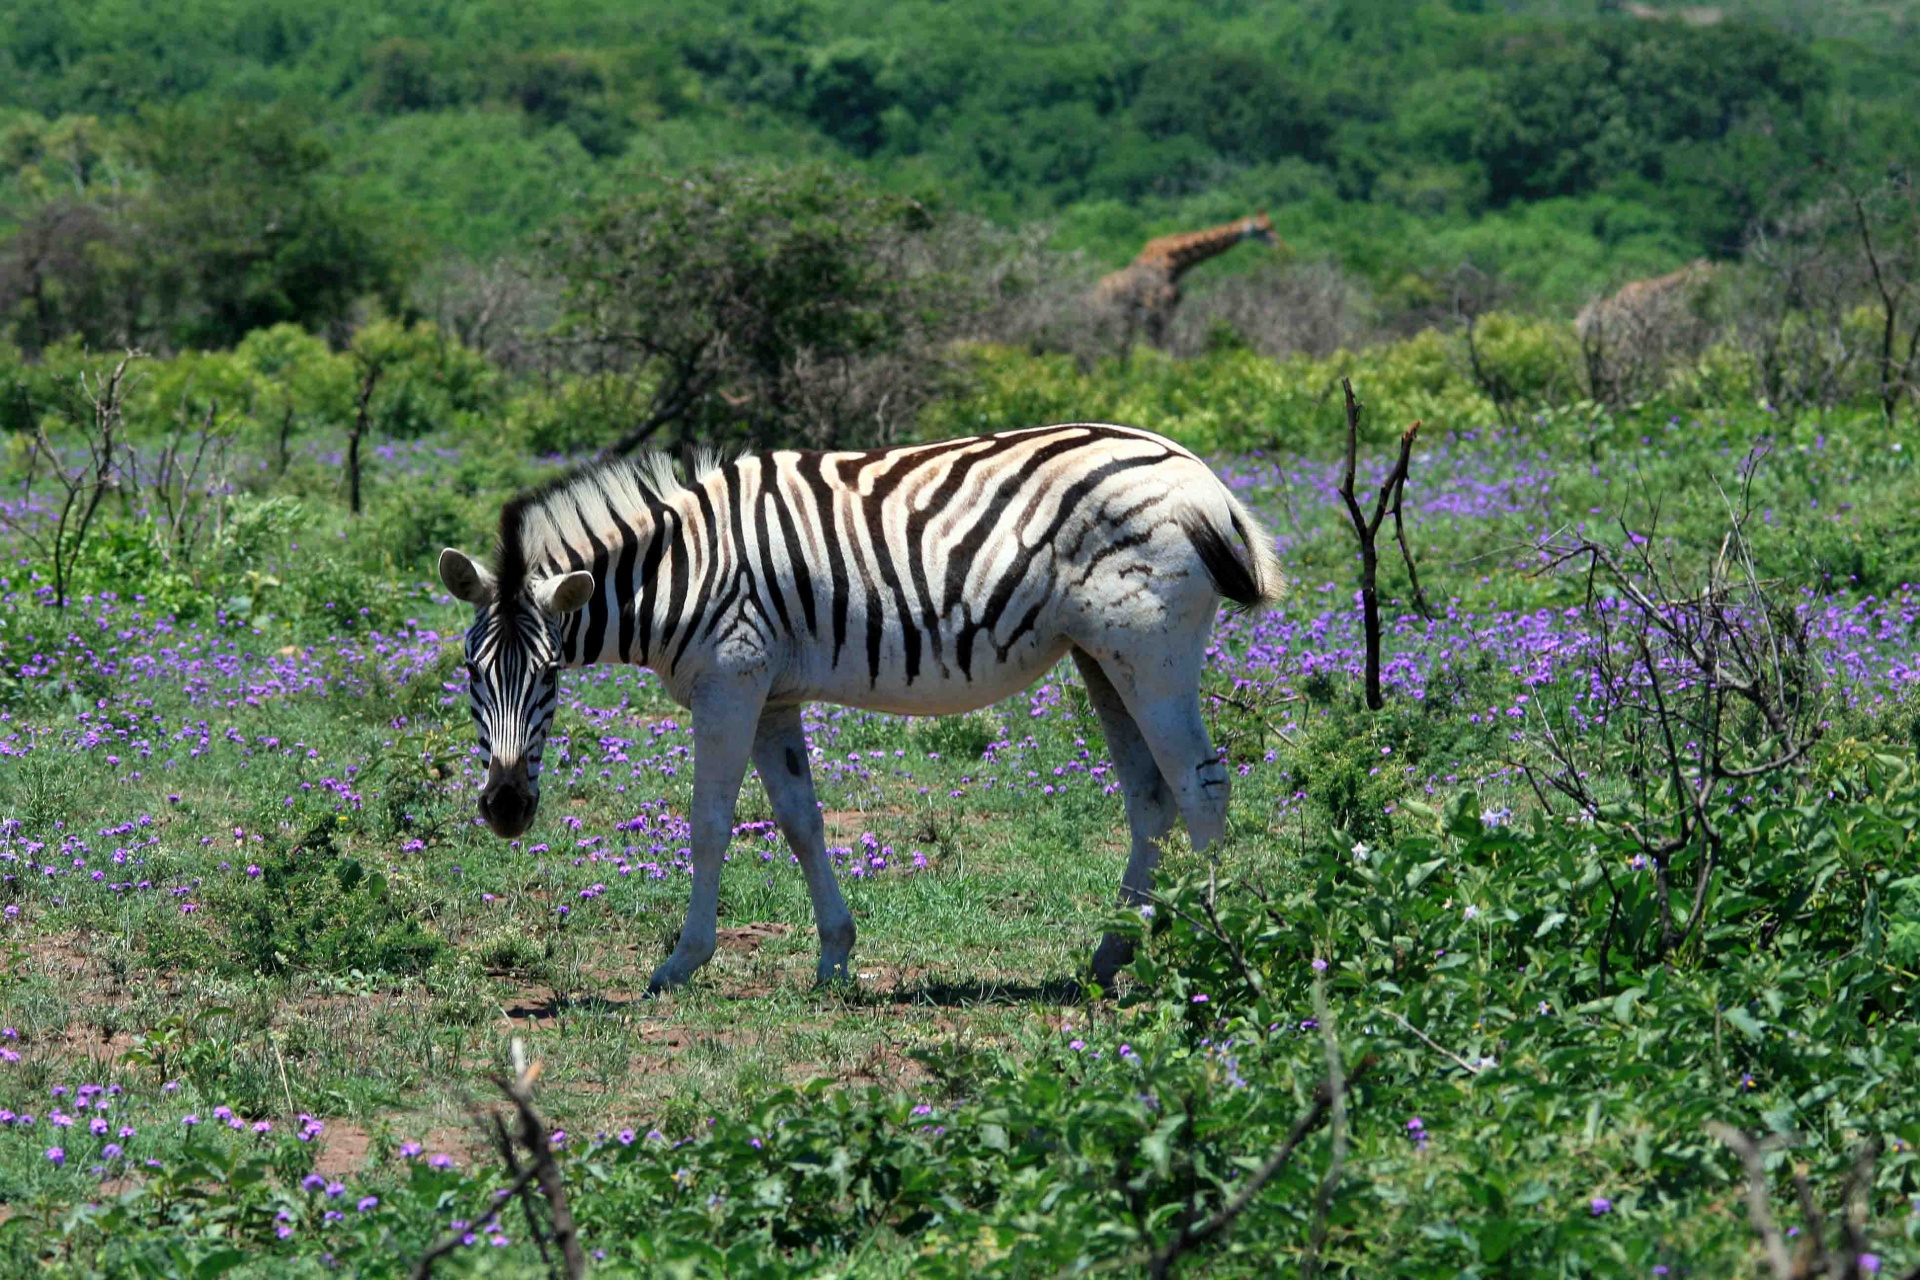 zebra side view mane striped pattern free photo